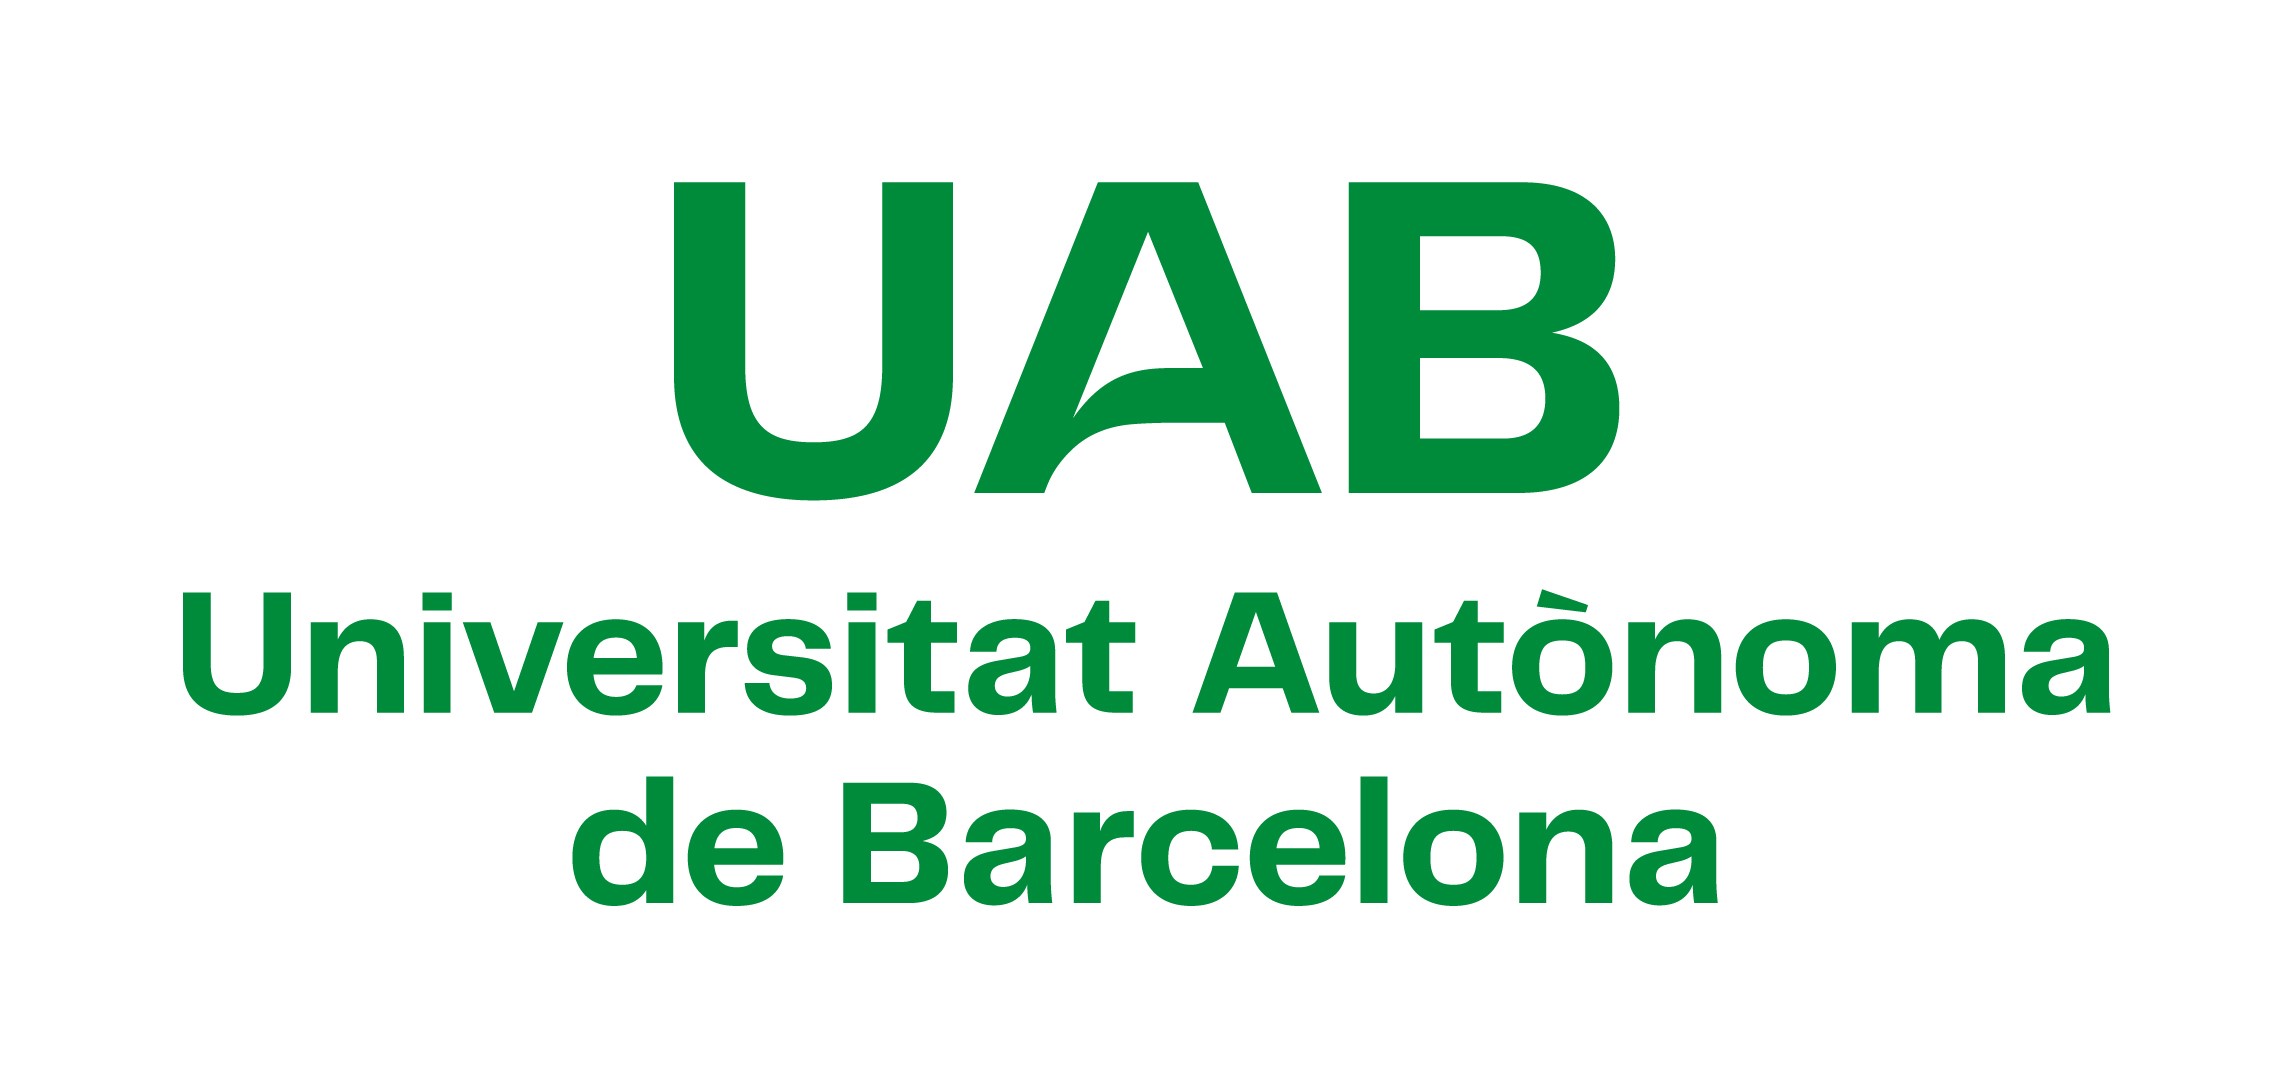 La UAB estrena logotipo - Universitat Autònoma de Barcelona - UAB Barcelona